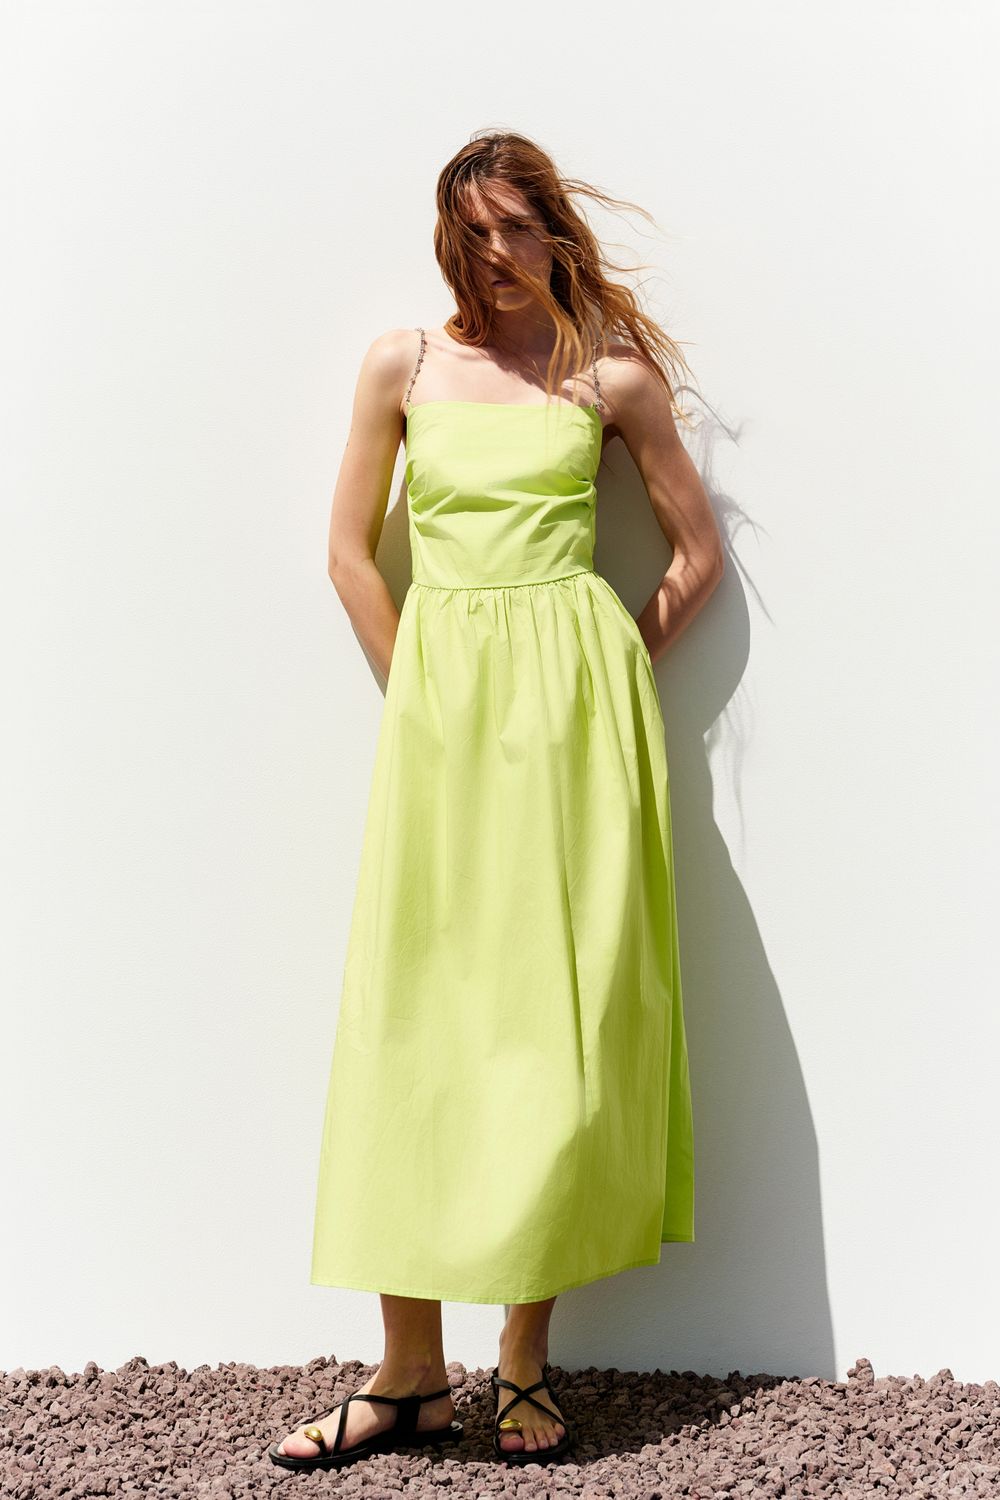 &quot;Golden Hour&quot; dress, Color: Lime, Size: S